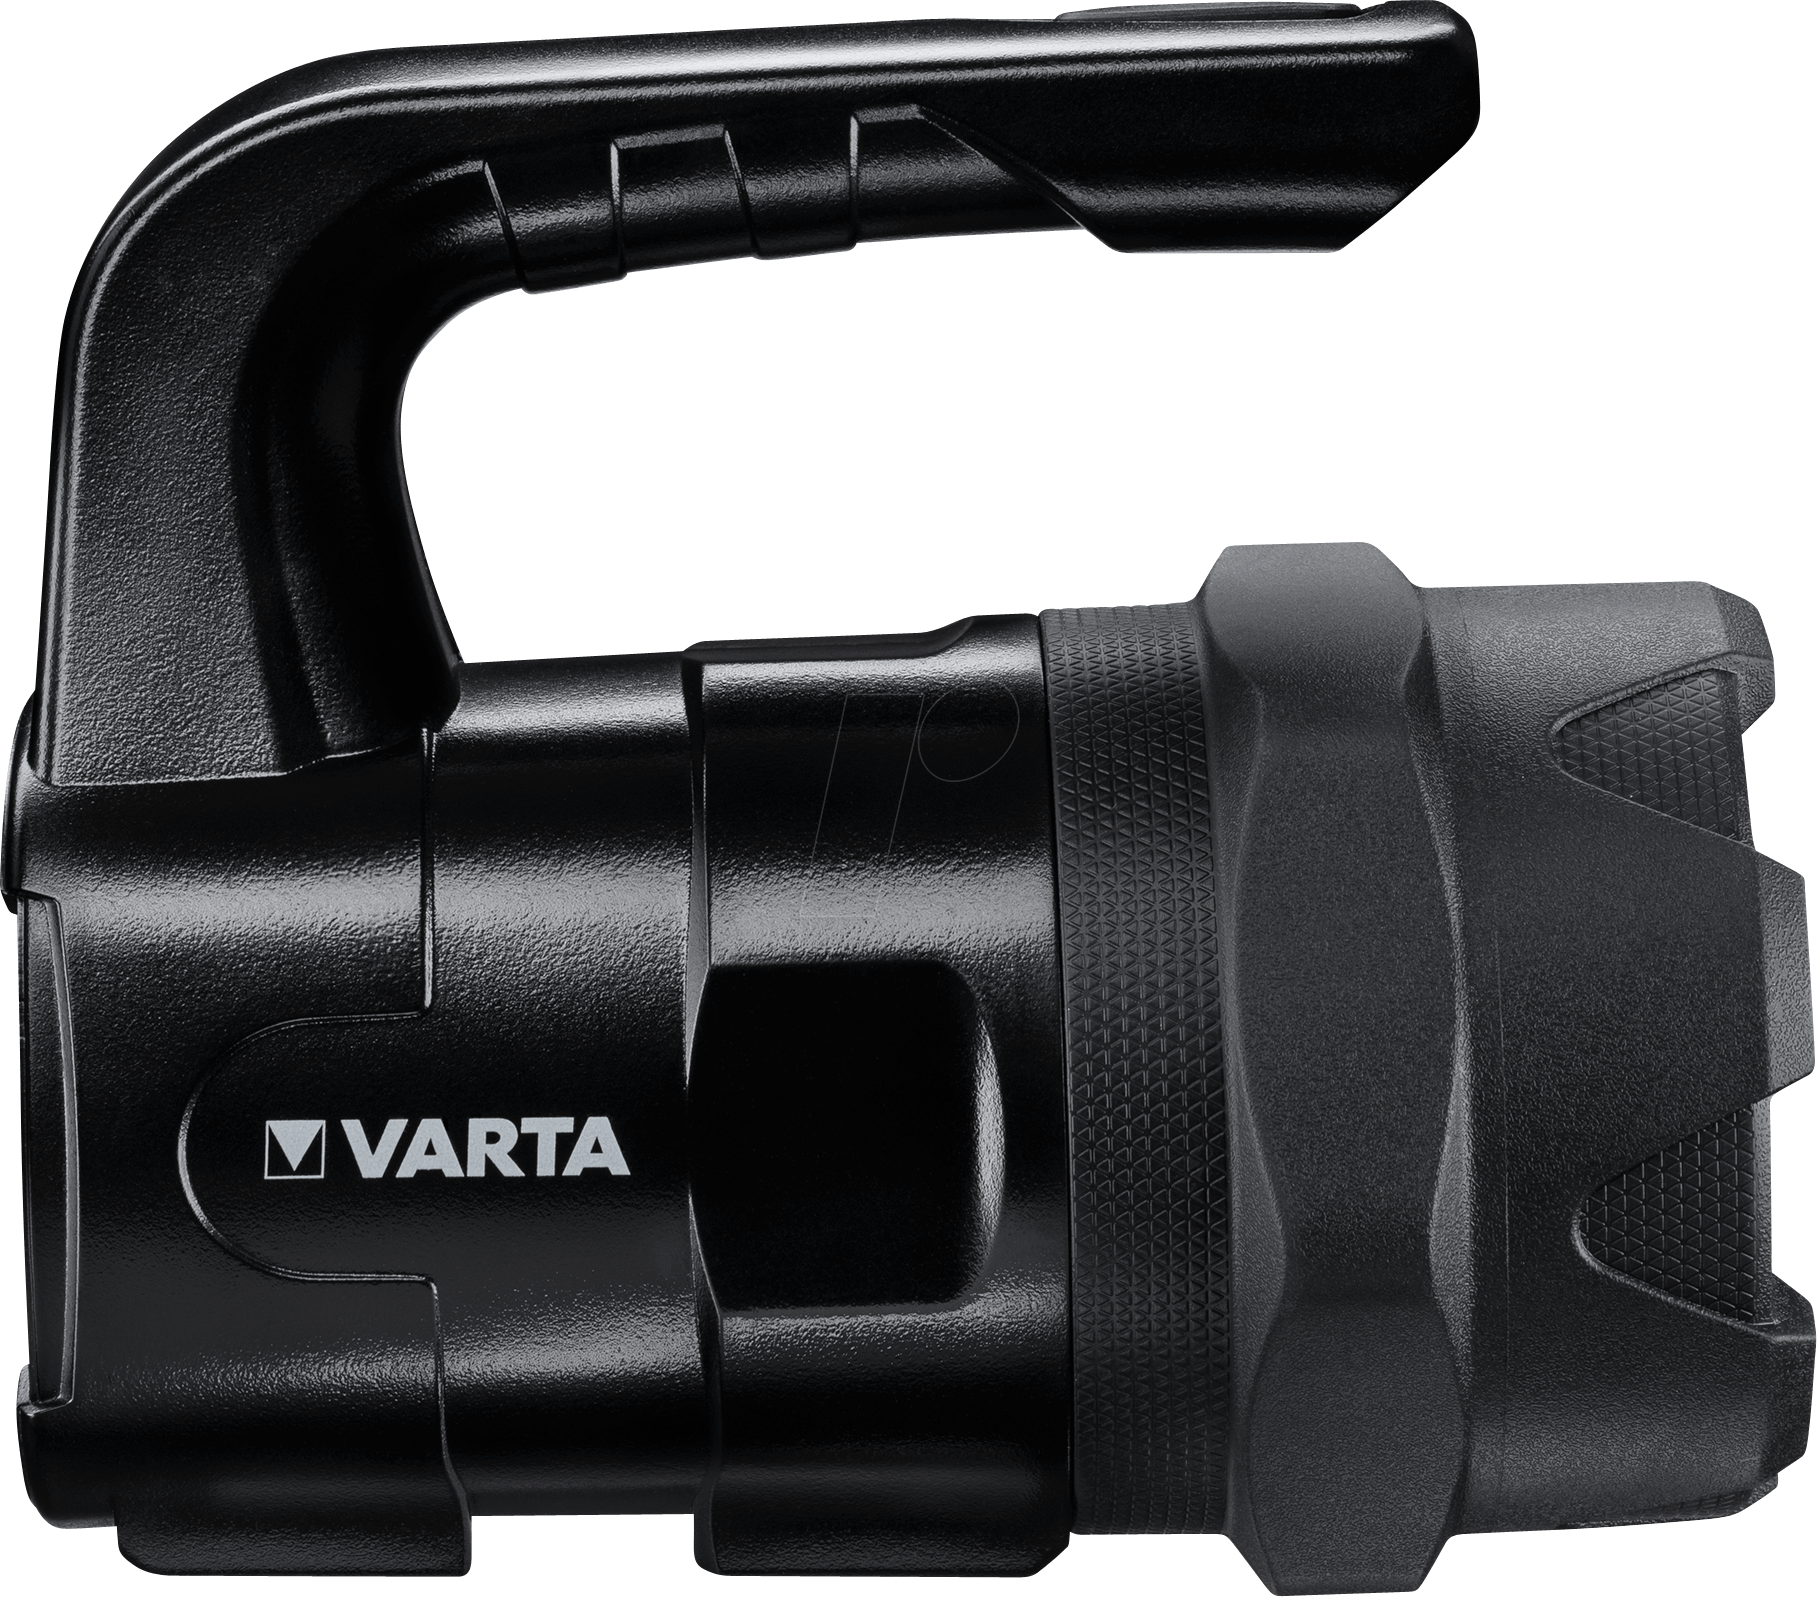 VAR IN BL20 PRO - LED-Taschenlampe Indestructible, BL20 PRO, schwarz, Alu von Varta